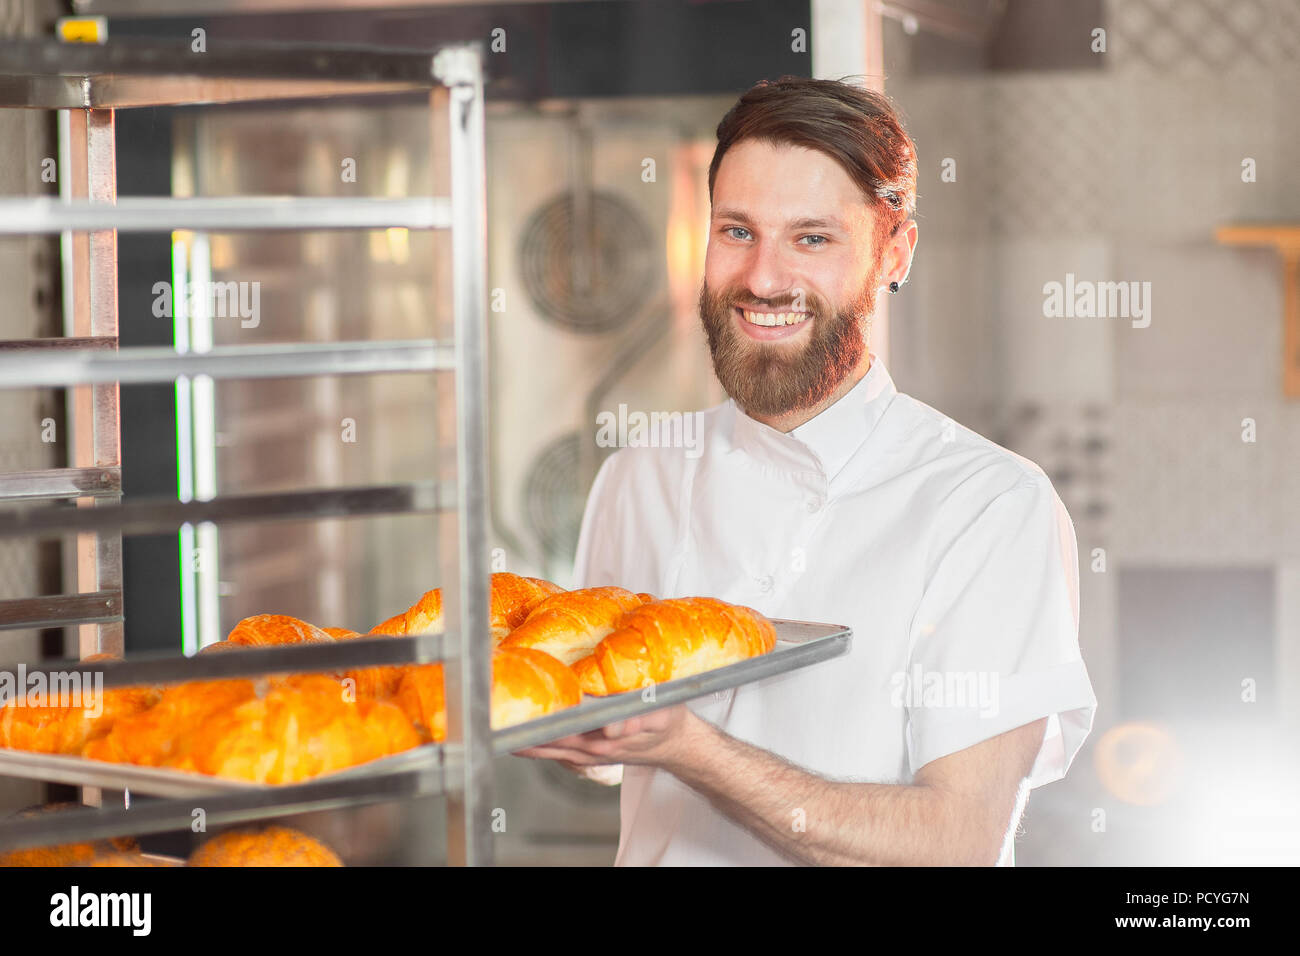 Ein junger hübscher Baker nimmt heiße frisch aus dem Ofen backen in der Bäckerei. Stockfoto